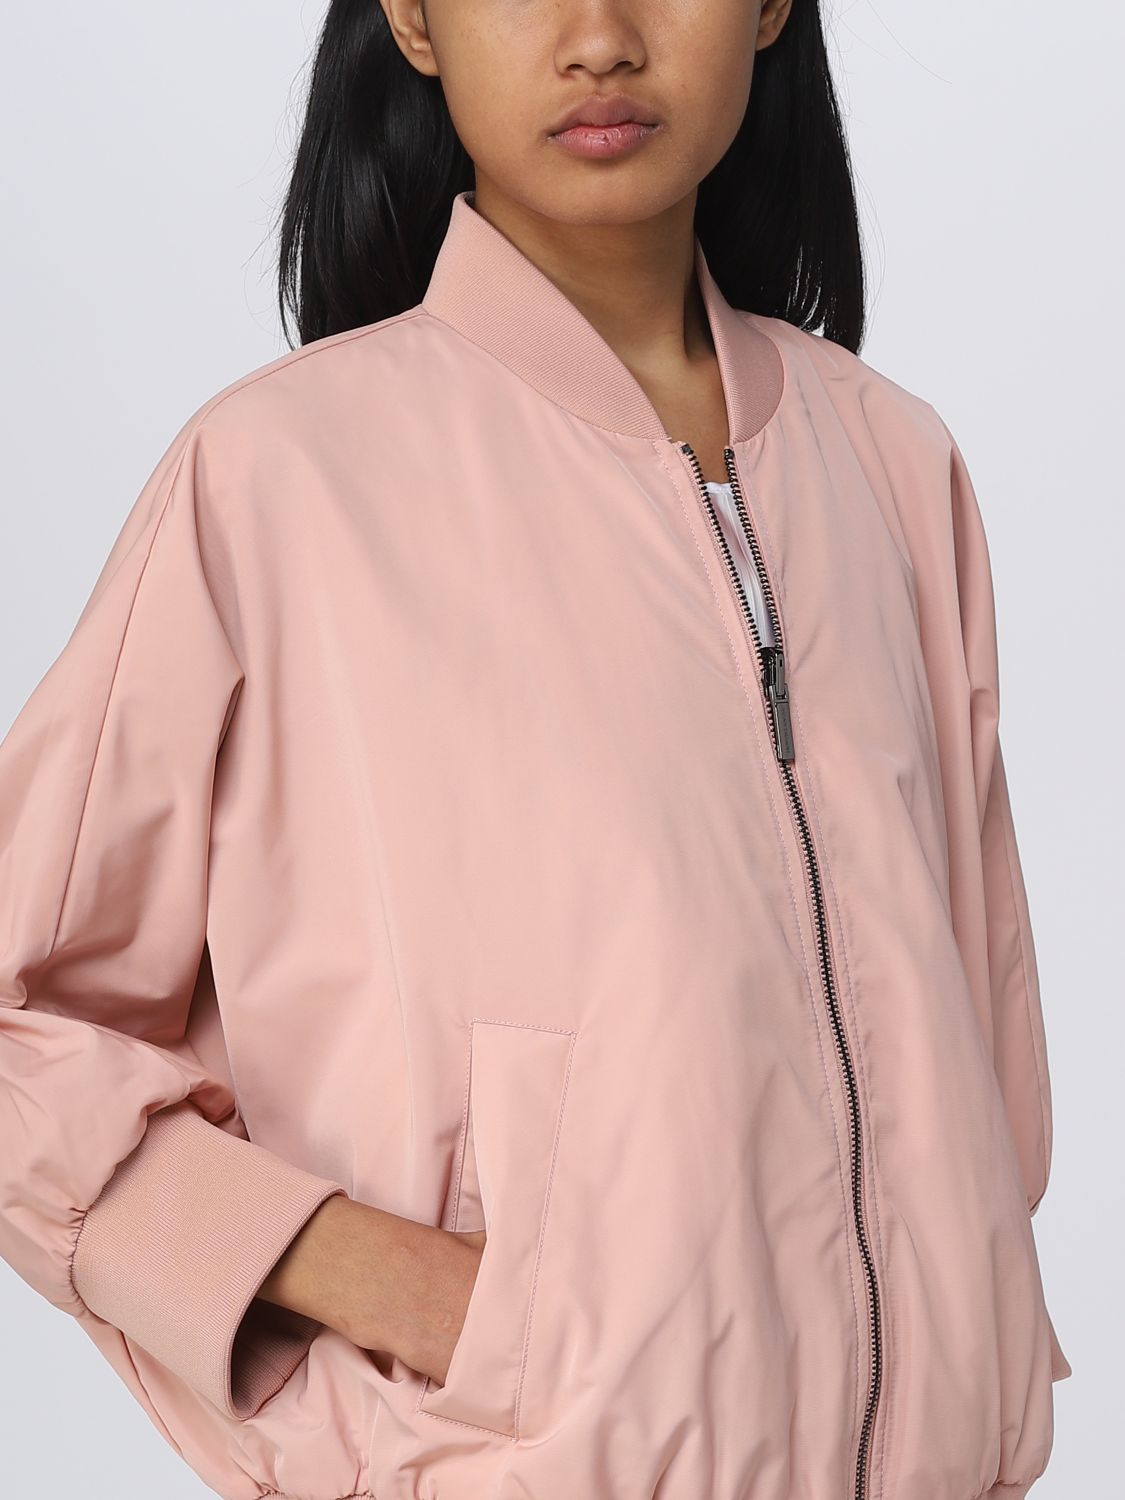 Malaise Niet genoeg Refrein ARMANI EXCHANGE: jacket for woman - Pink | Armani Exchange jacket  3RYB15YN6GZ online on GIGLIO.COM